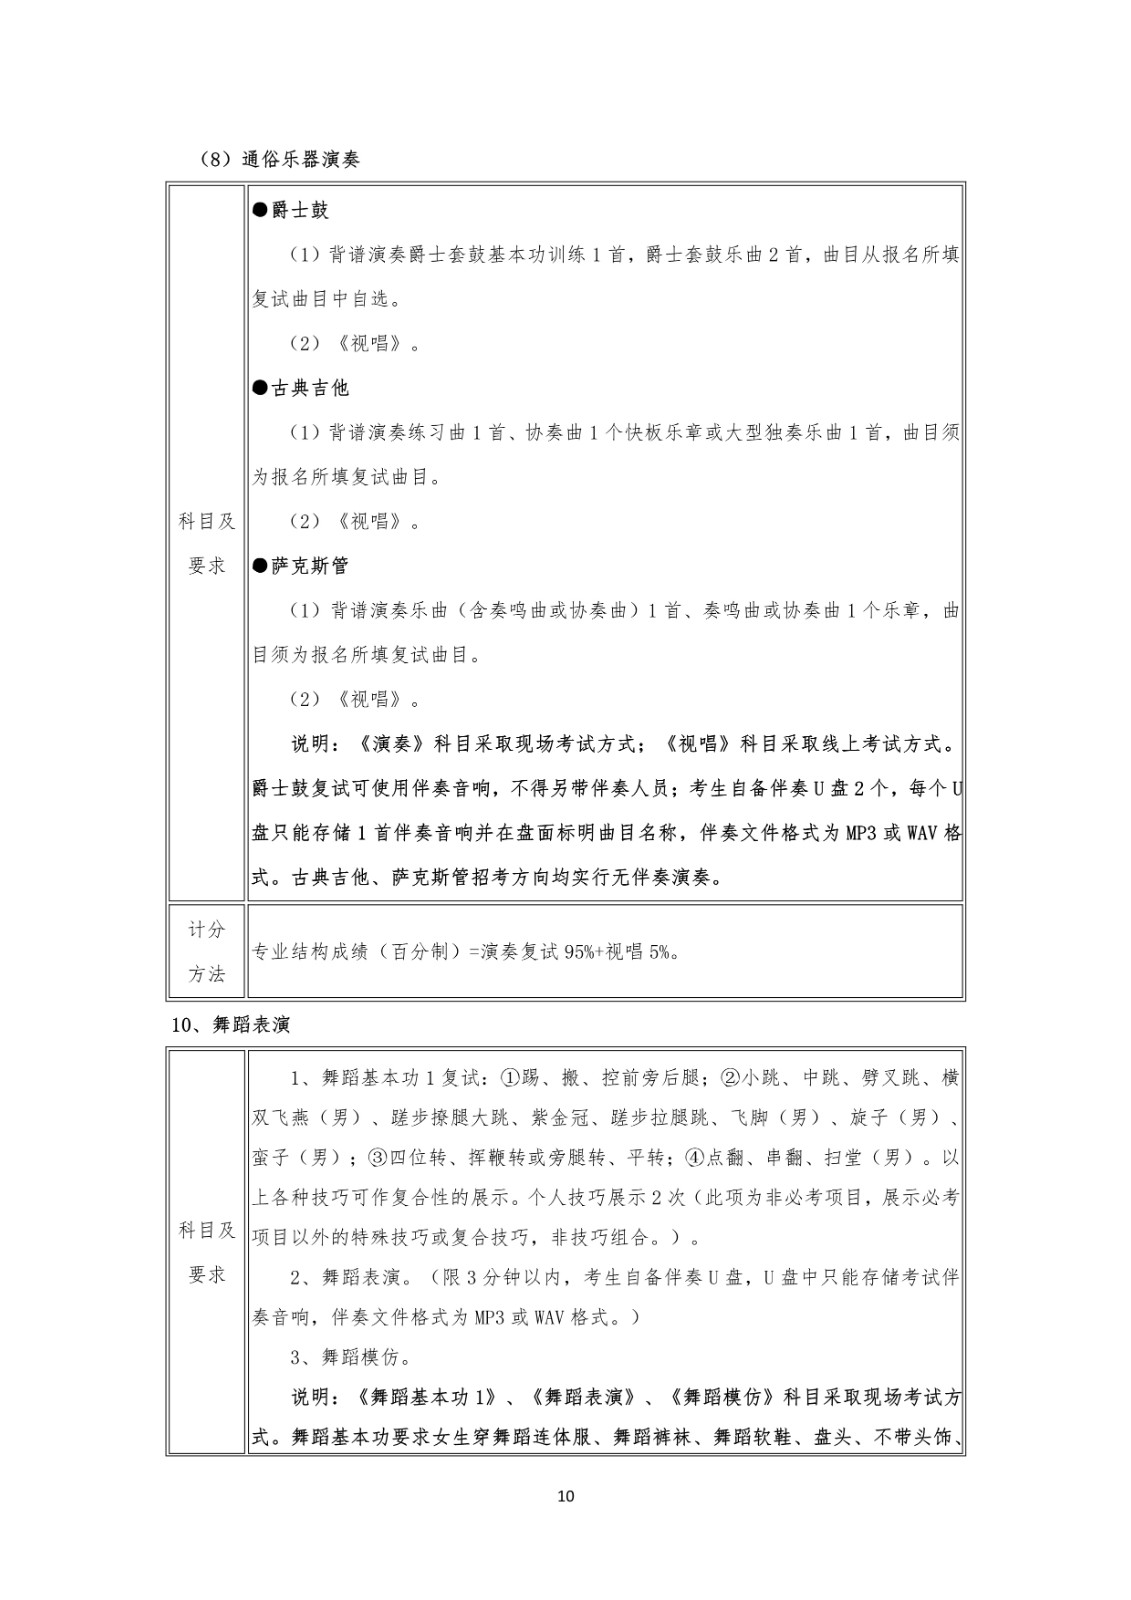 关于2020年武汉音乐学院普通本科招生专业考试方案第二次调整的公告